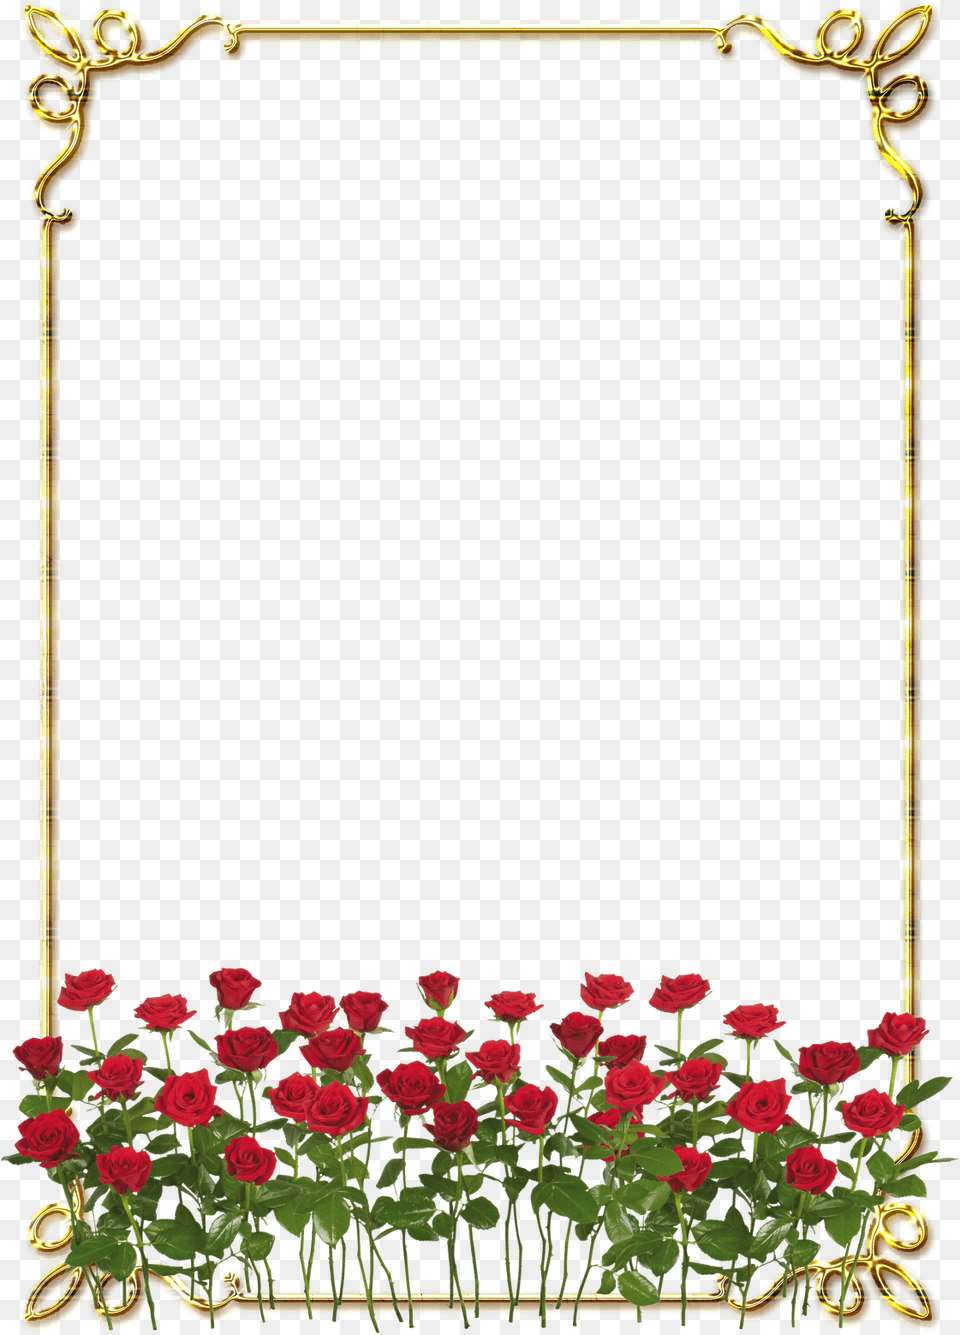 Frames Douradas Com Rosa Vermelhas Rose Border Flower Design, Plant, Art, Floral Design, Graphics Png Image